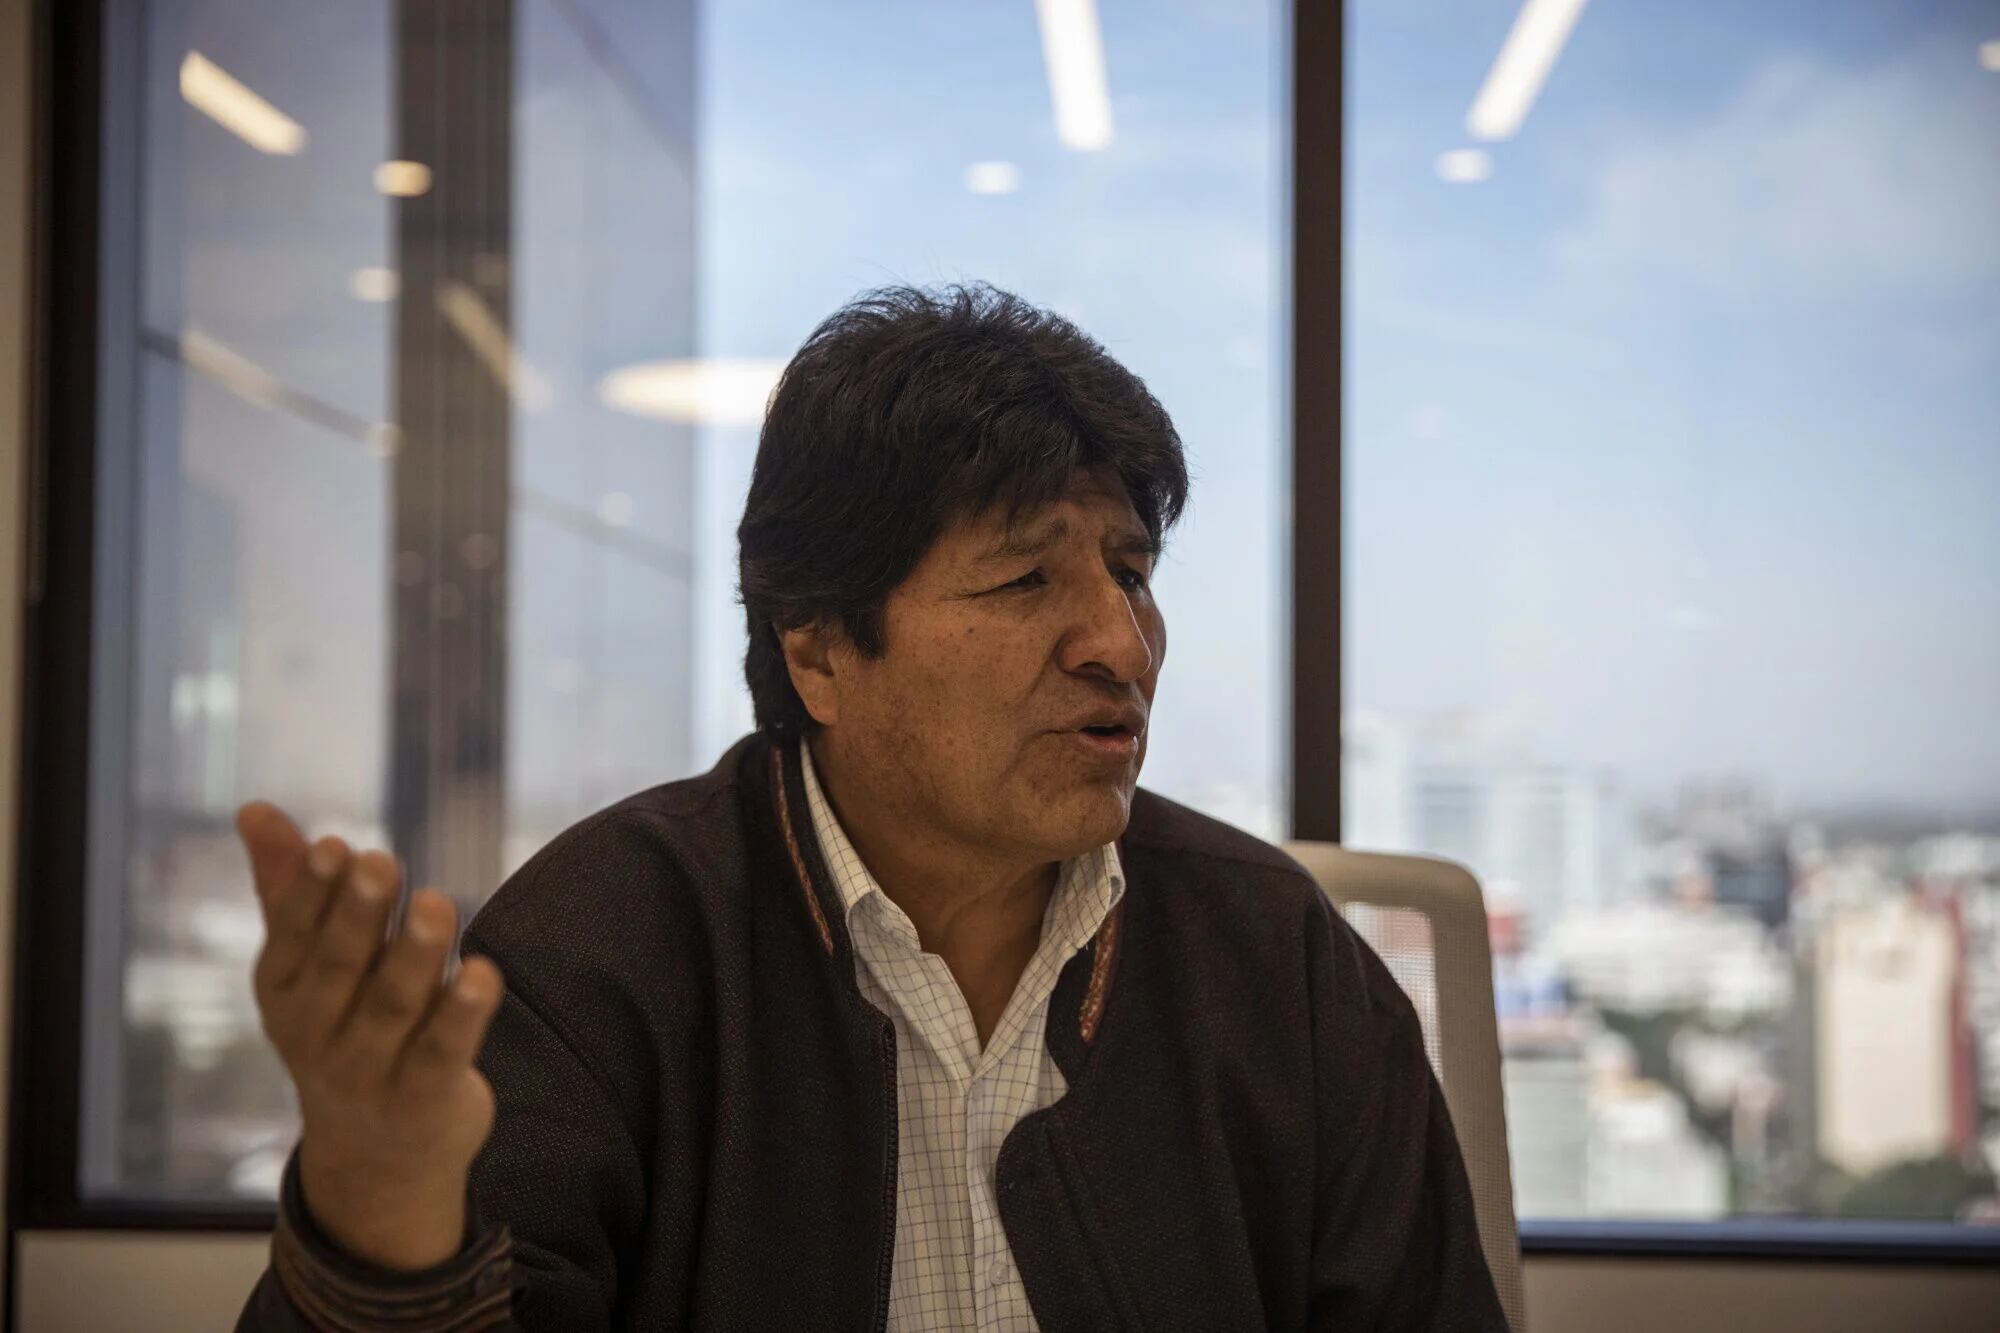 Evo Morales, Bolivias former president, speaks during an interview in Mexico City, Mexico, on Nov. 18, 2019.